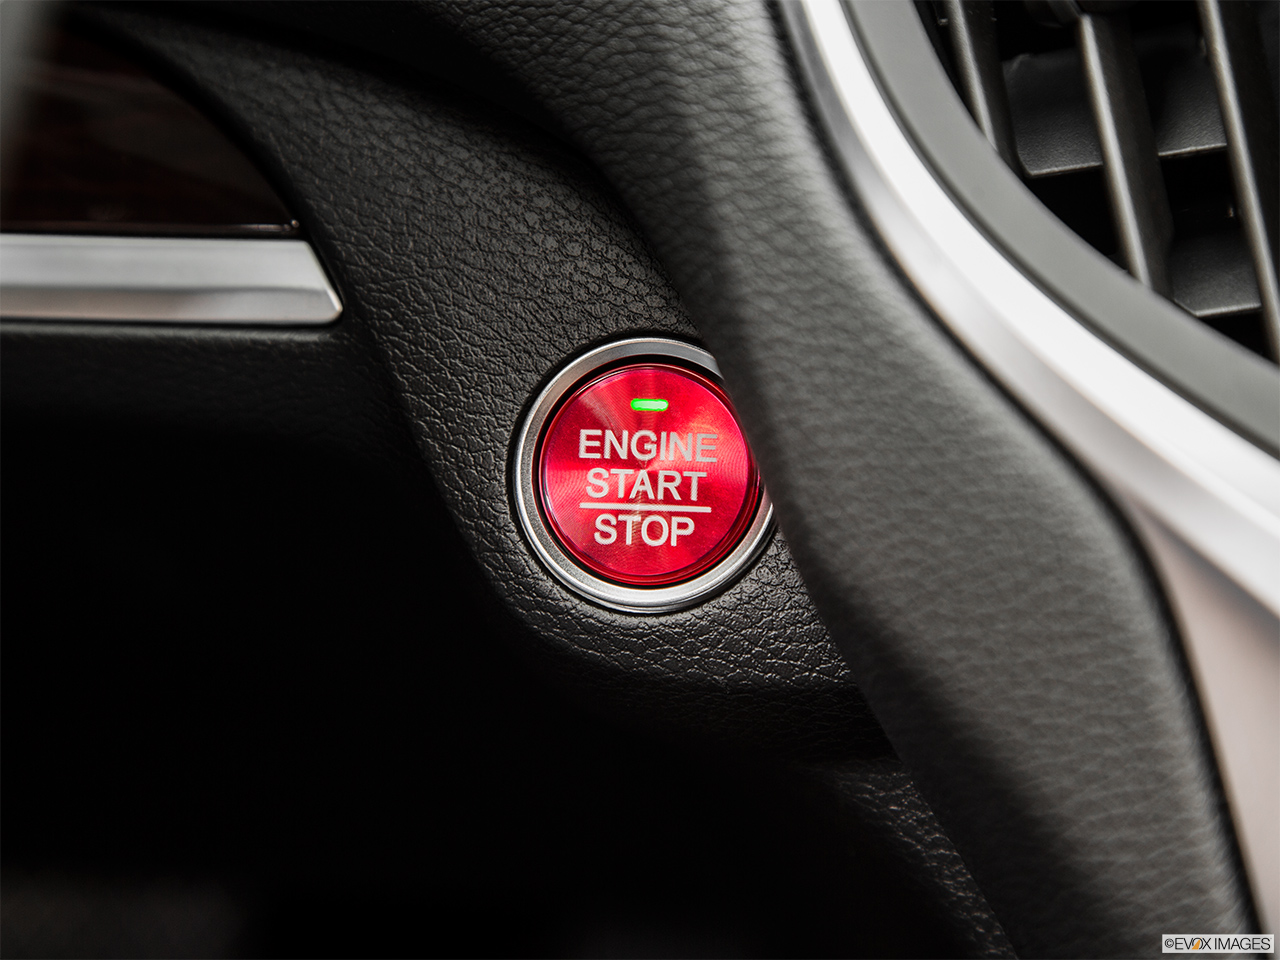 2015 Acura TLX 3.5 V-6 9-AT SH-AWD Keyless Ignition 